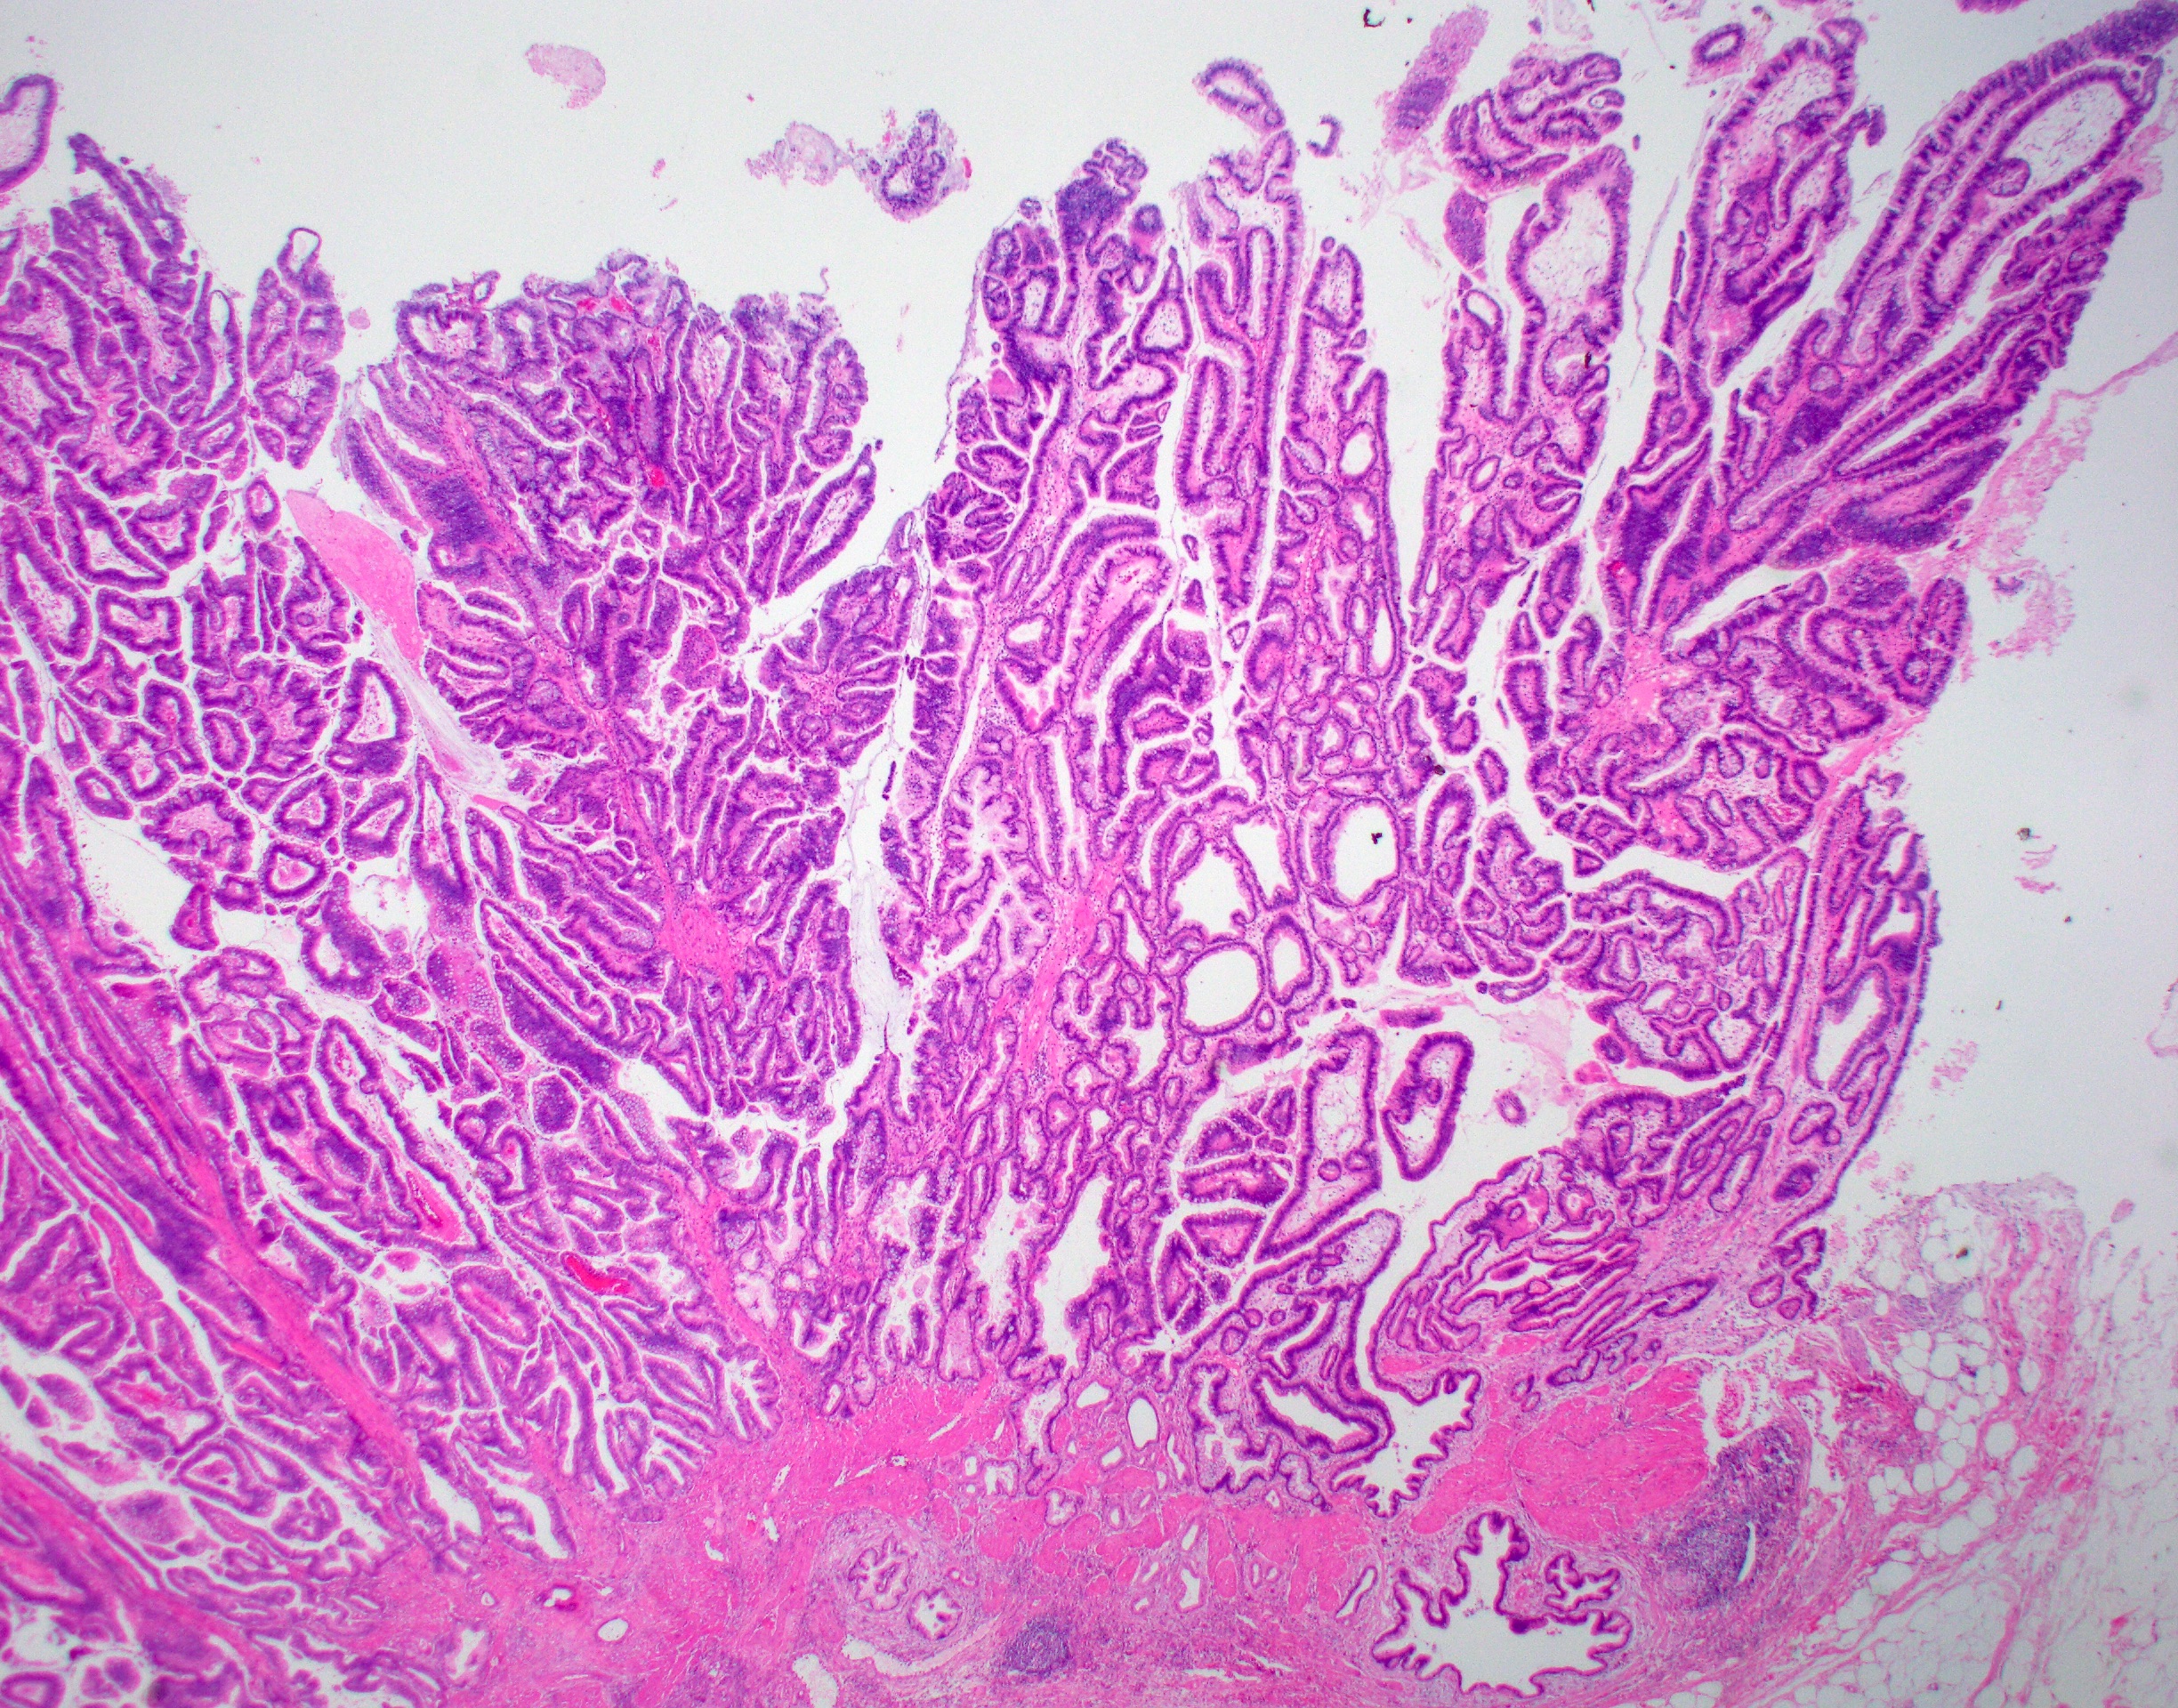 Gallbladder Histology